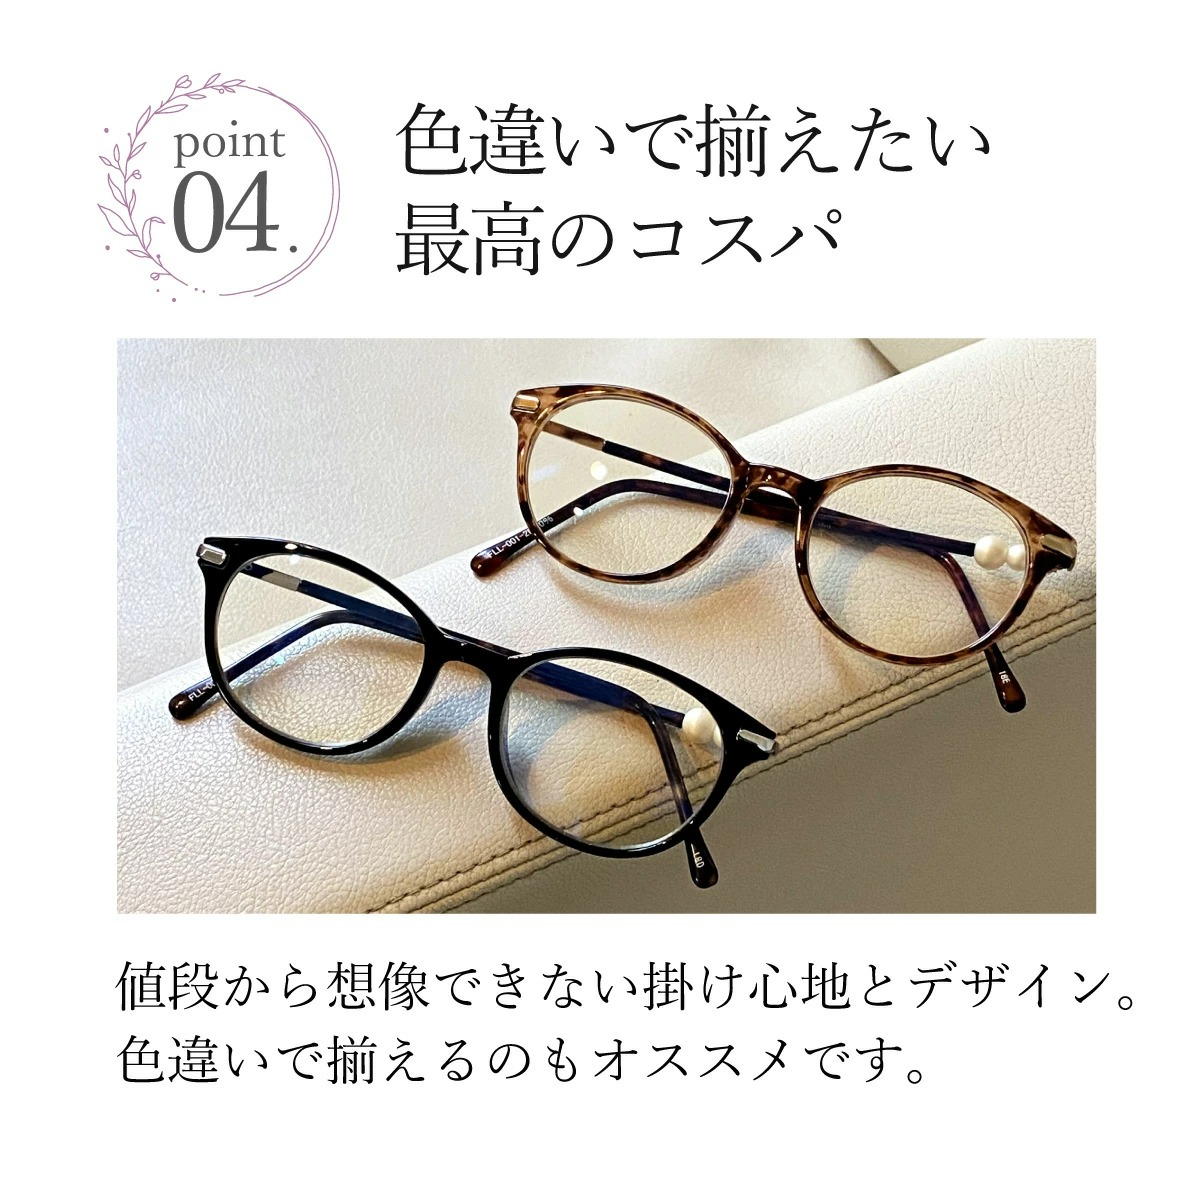 新品 藤田光学～超弾性樹脂 シニアグラス グレー SM 2.00 老眼鏡